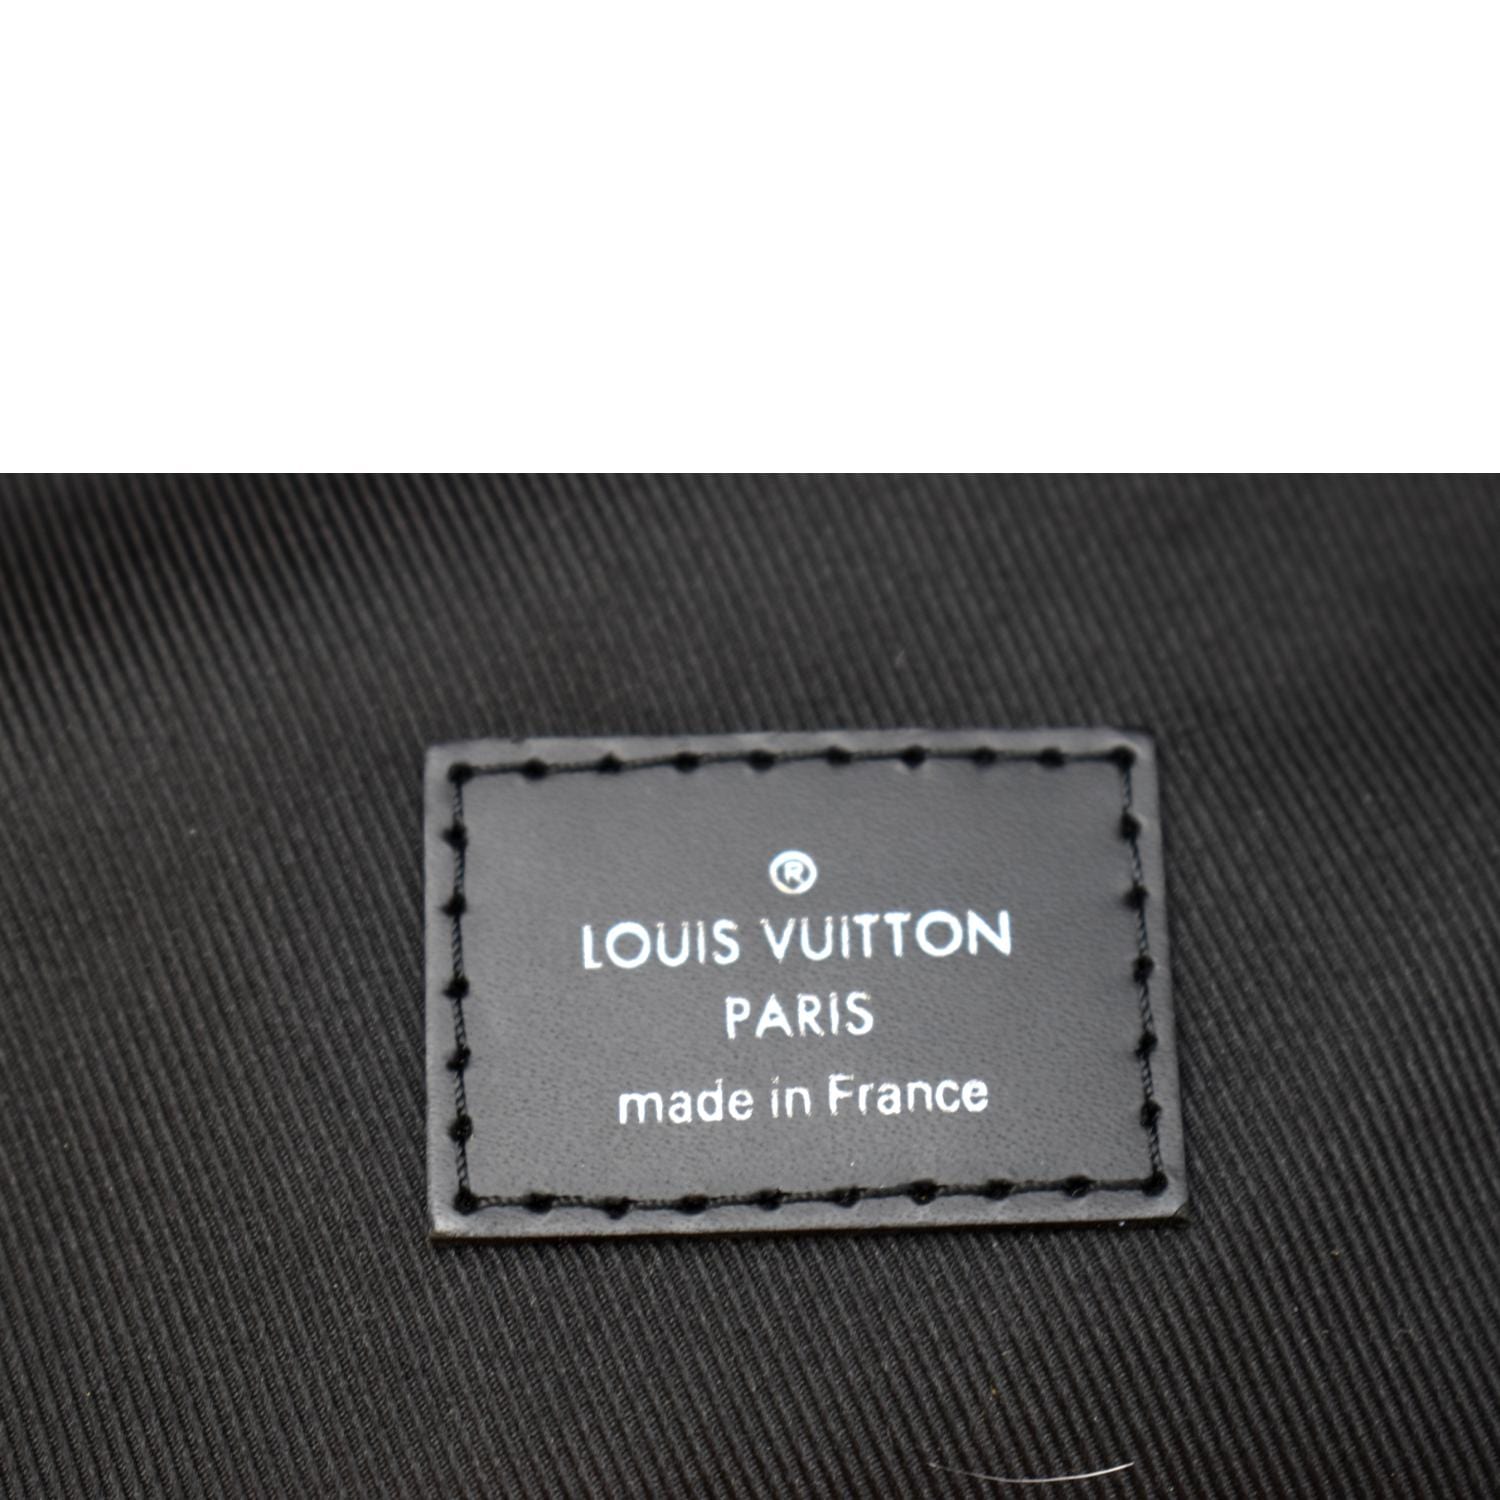 Authentic Louis Vuitton Damier Graphite Avenue Sling Bag – Paris